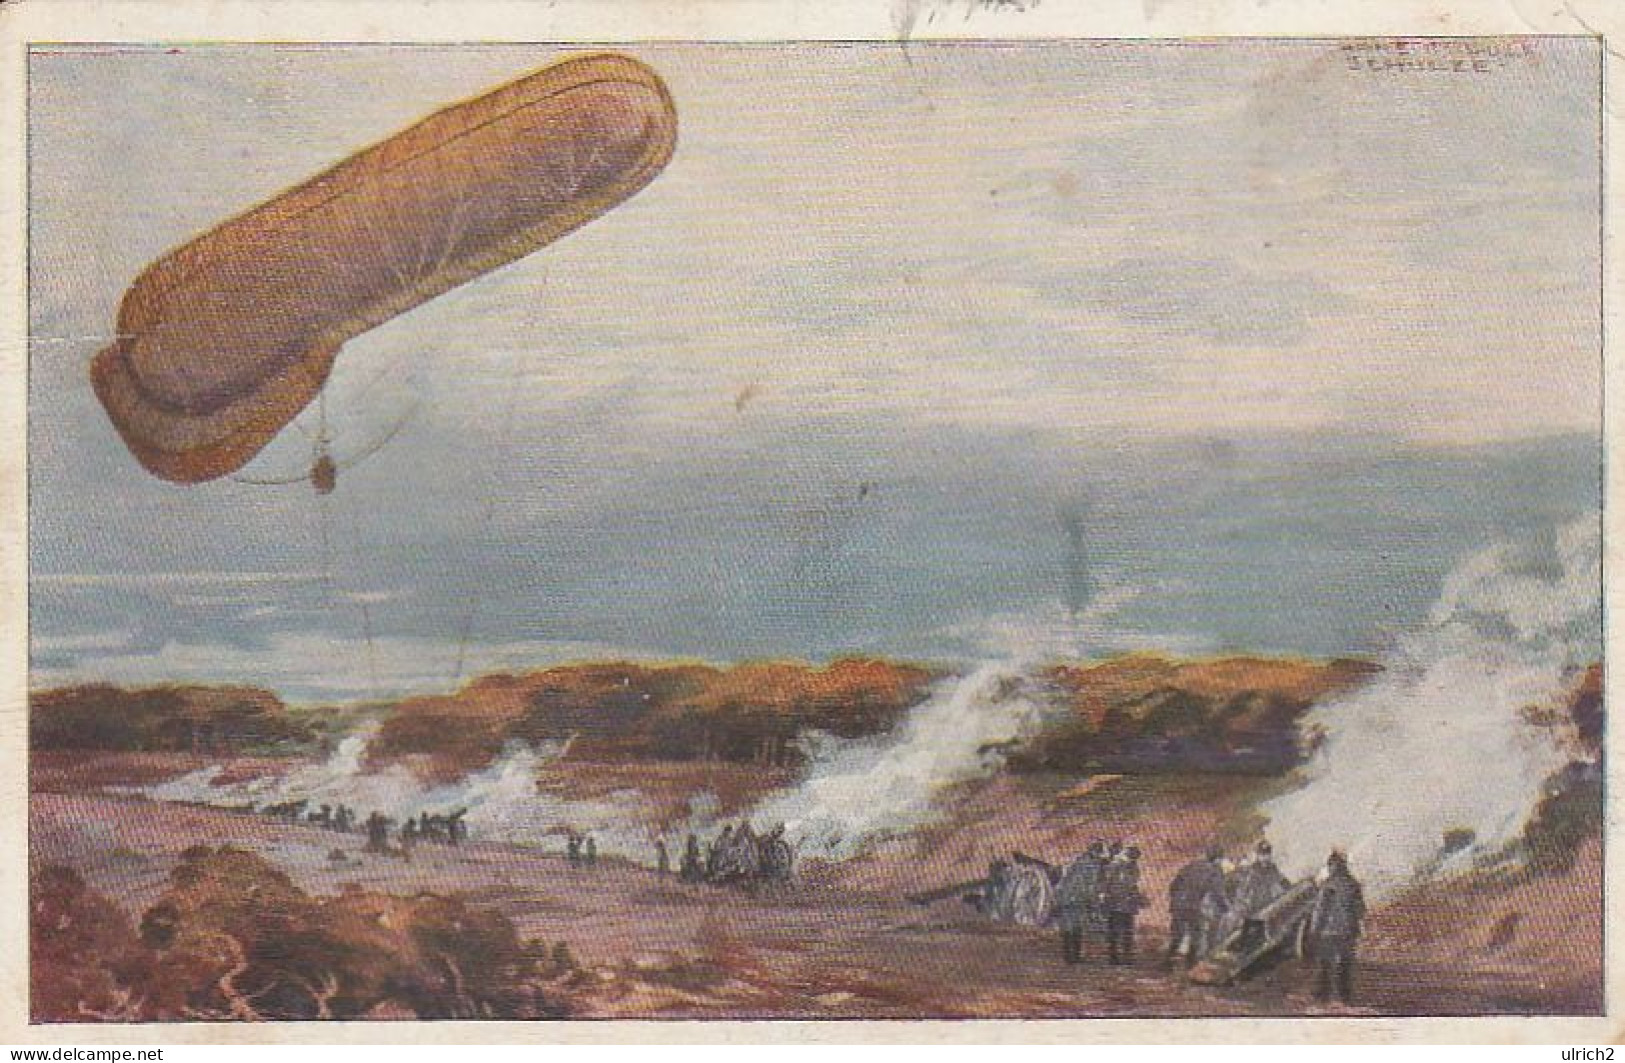 AK Fesselballon Unsere Artilleriewirkung Beobachtend - Prof. Schulze - Patriotika - 1915  (68650) - Fesselballons